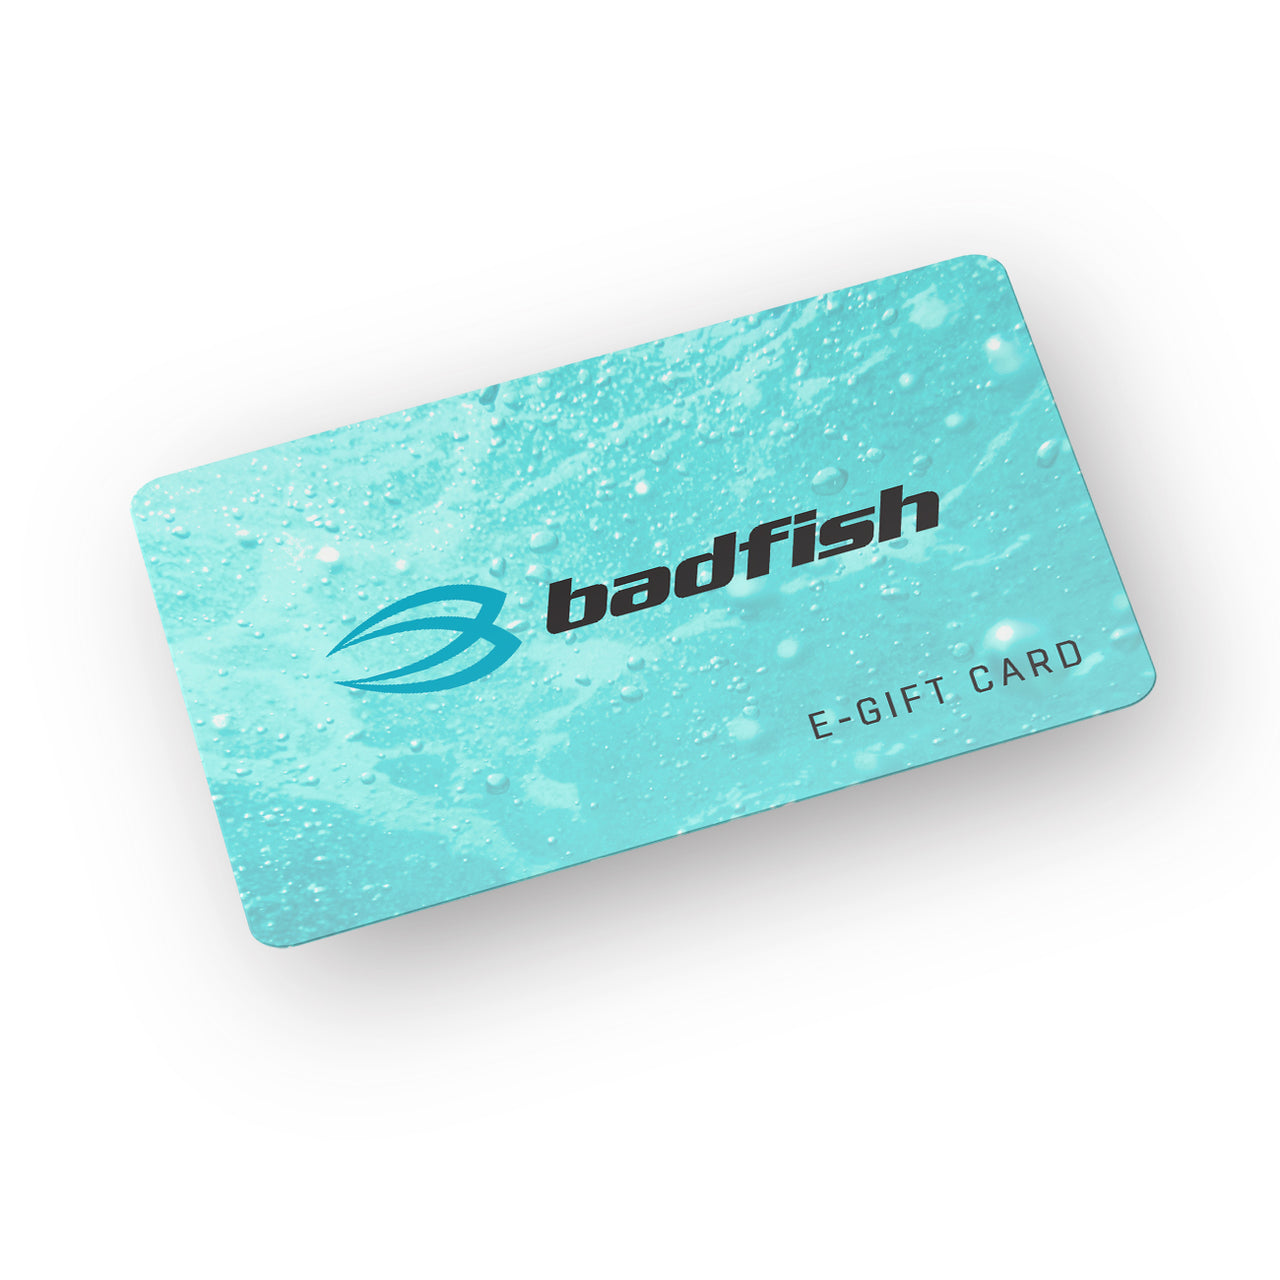 Badfish E-Gift Card